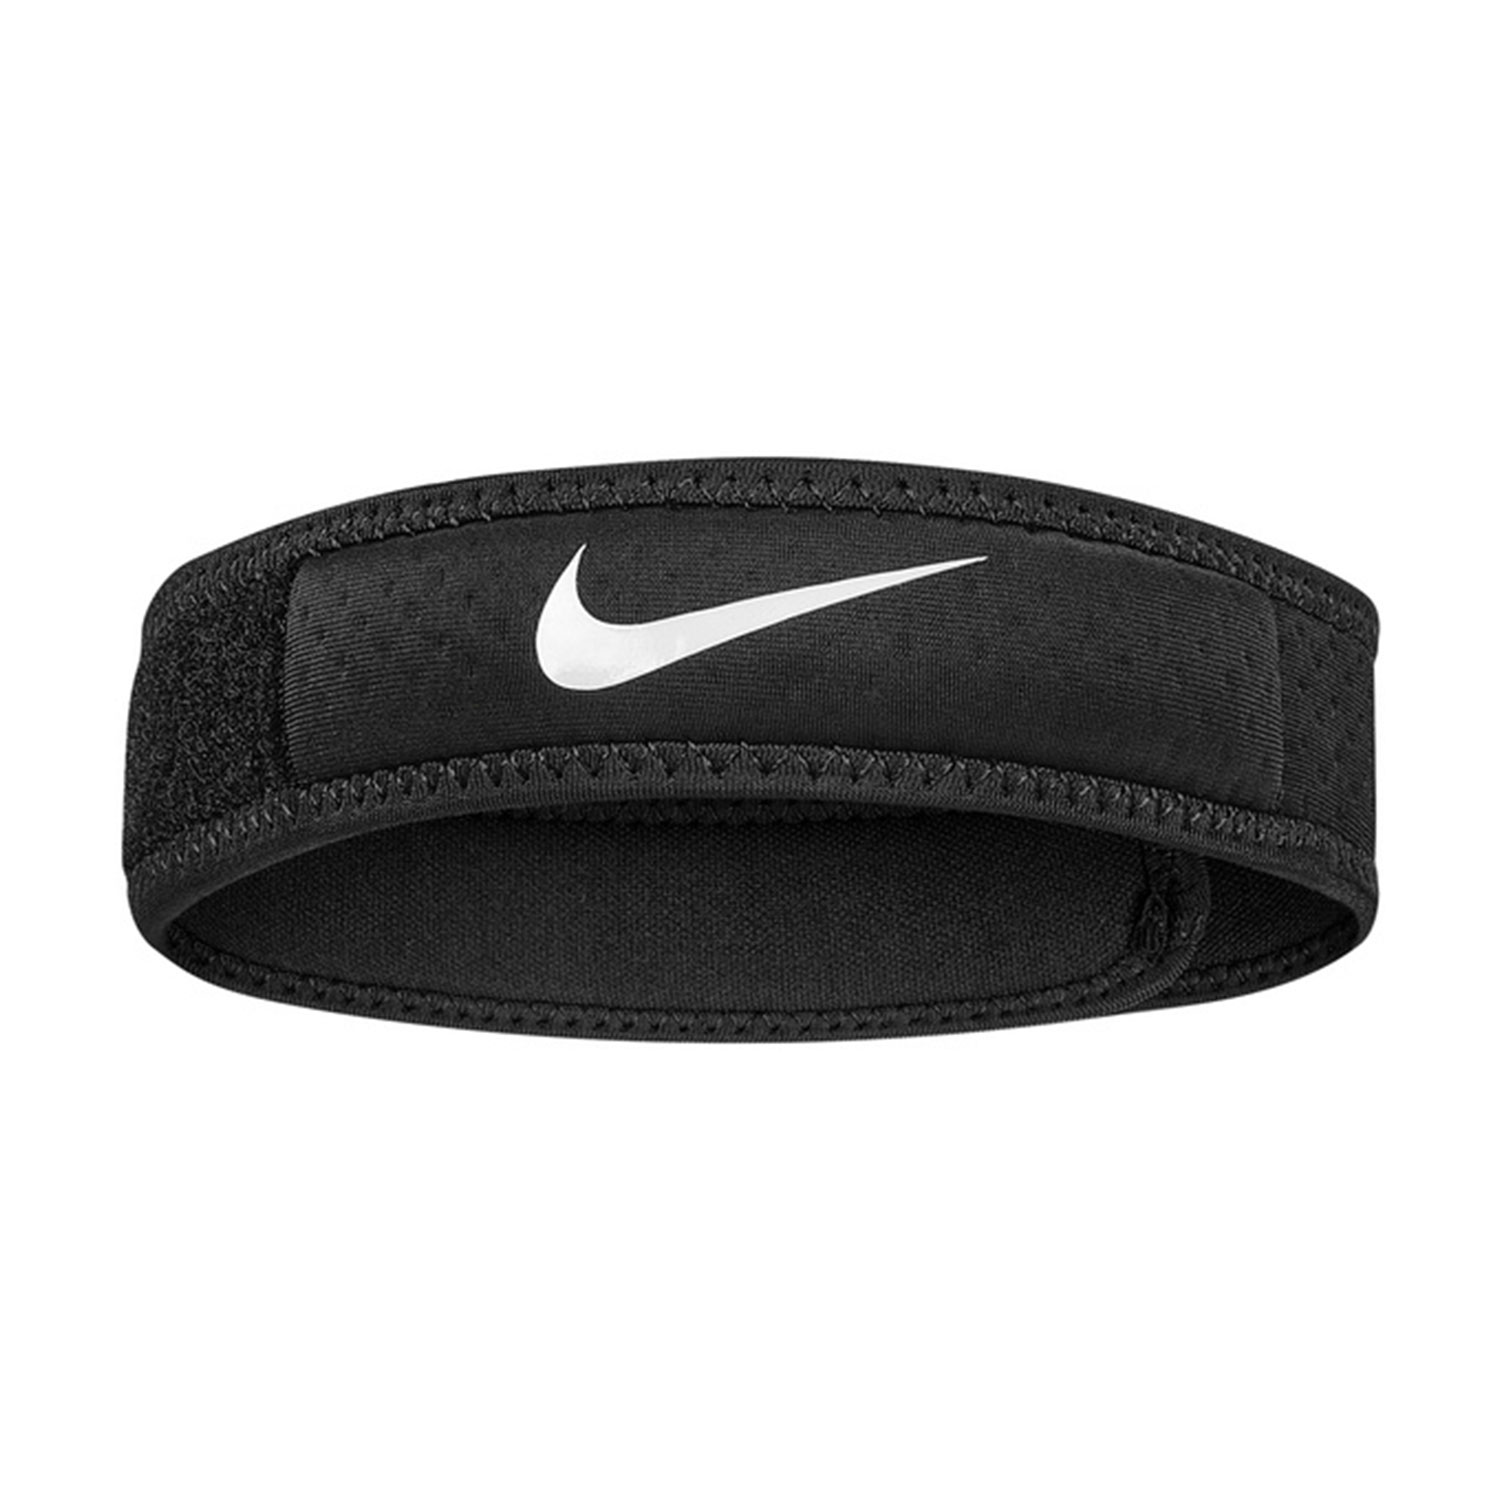 sonrojo Sofisticado Detectar Nike Pro 3.0 Banda de Rodilla de Tenis - Black/White